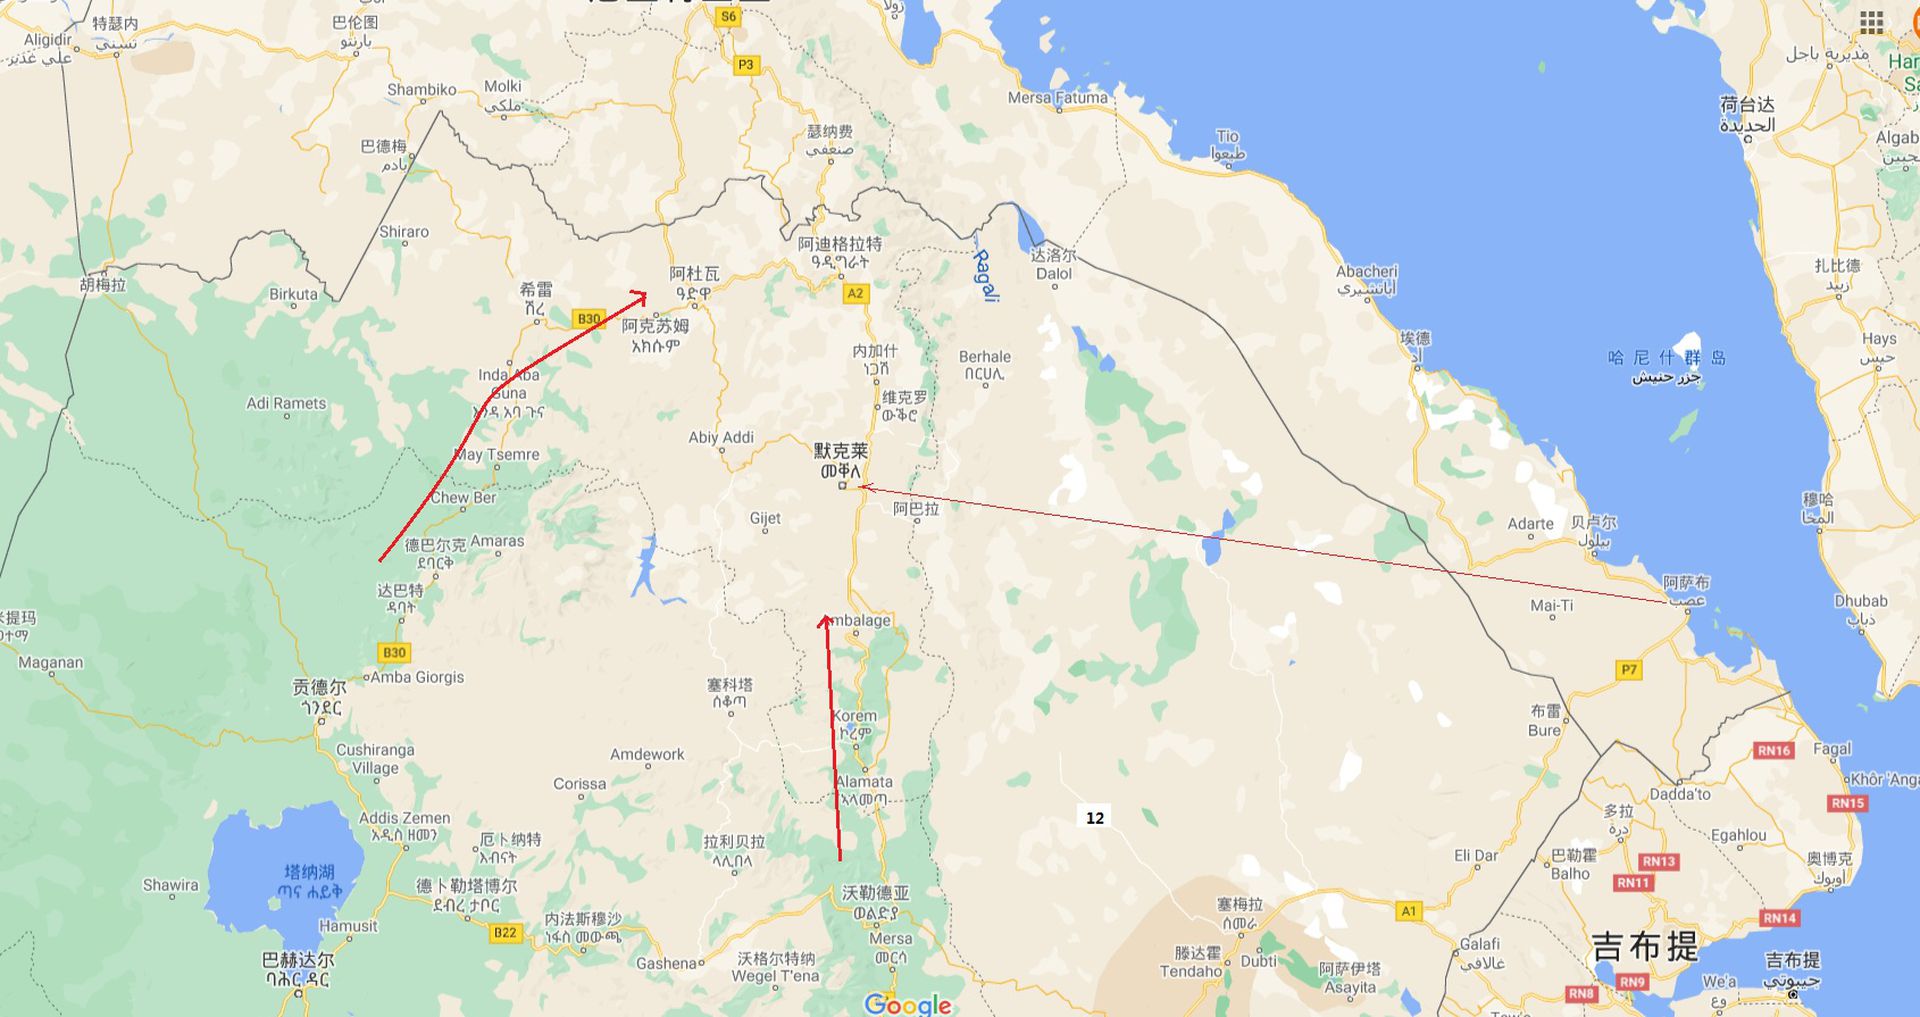 埃塞俄比亚北部提格雷地区的战事主要沿两条公路展开，其中埃军在11月18日前后推进至阿克苏姆后，即将夺取阿杜瓦一线，北方又有厄立特里亚施压。在政府军也推进至默克莱以南地区后，沿交通线据守的叛军已选择有限，与此同时，从阿萨布起飞的无人机还在持续轰炸。（谷歌地图截图）